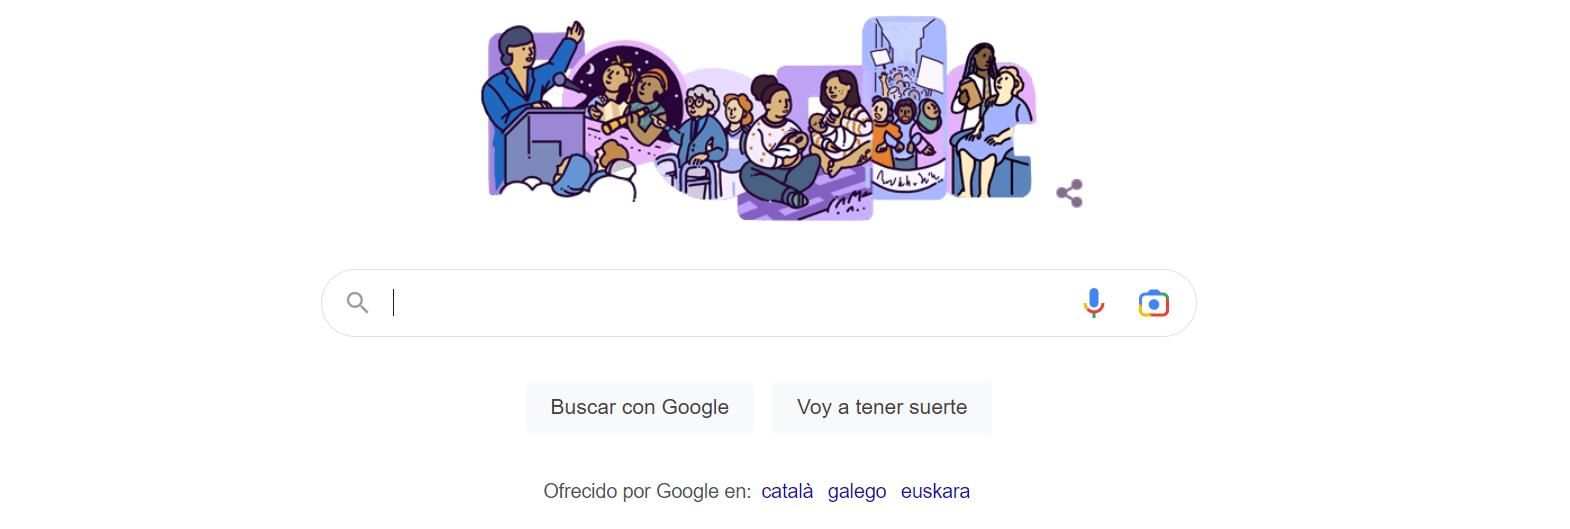 Google homenajea a las mujeres en su 'doodle' con motivo del Día Internacional de la Mujer.